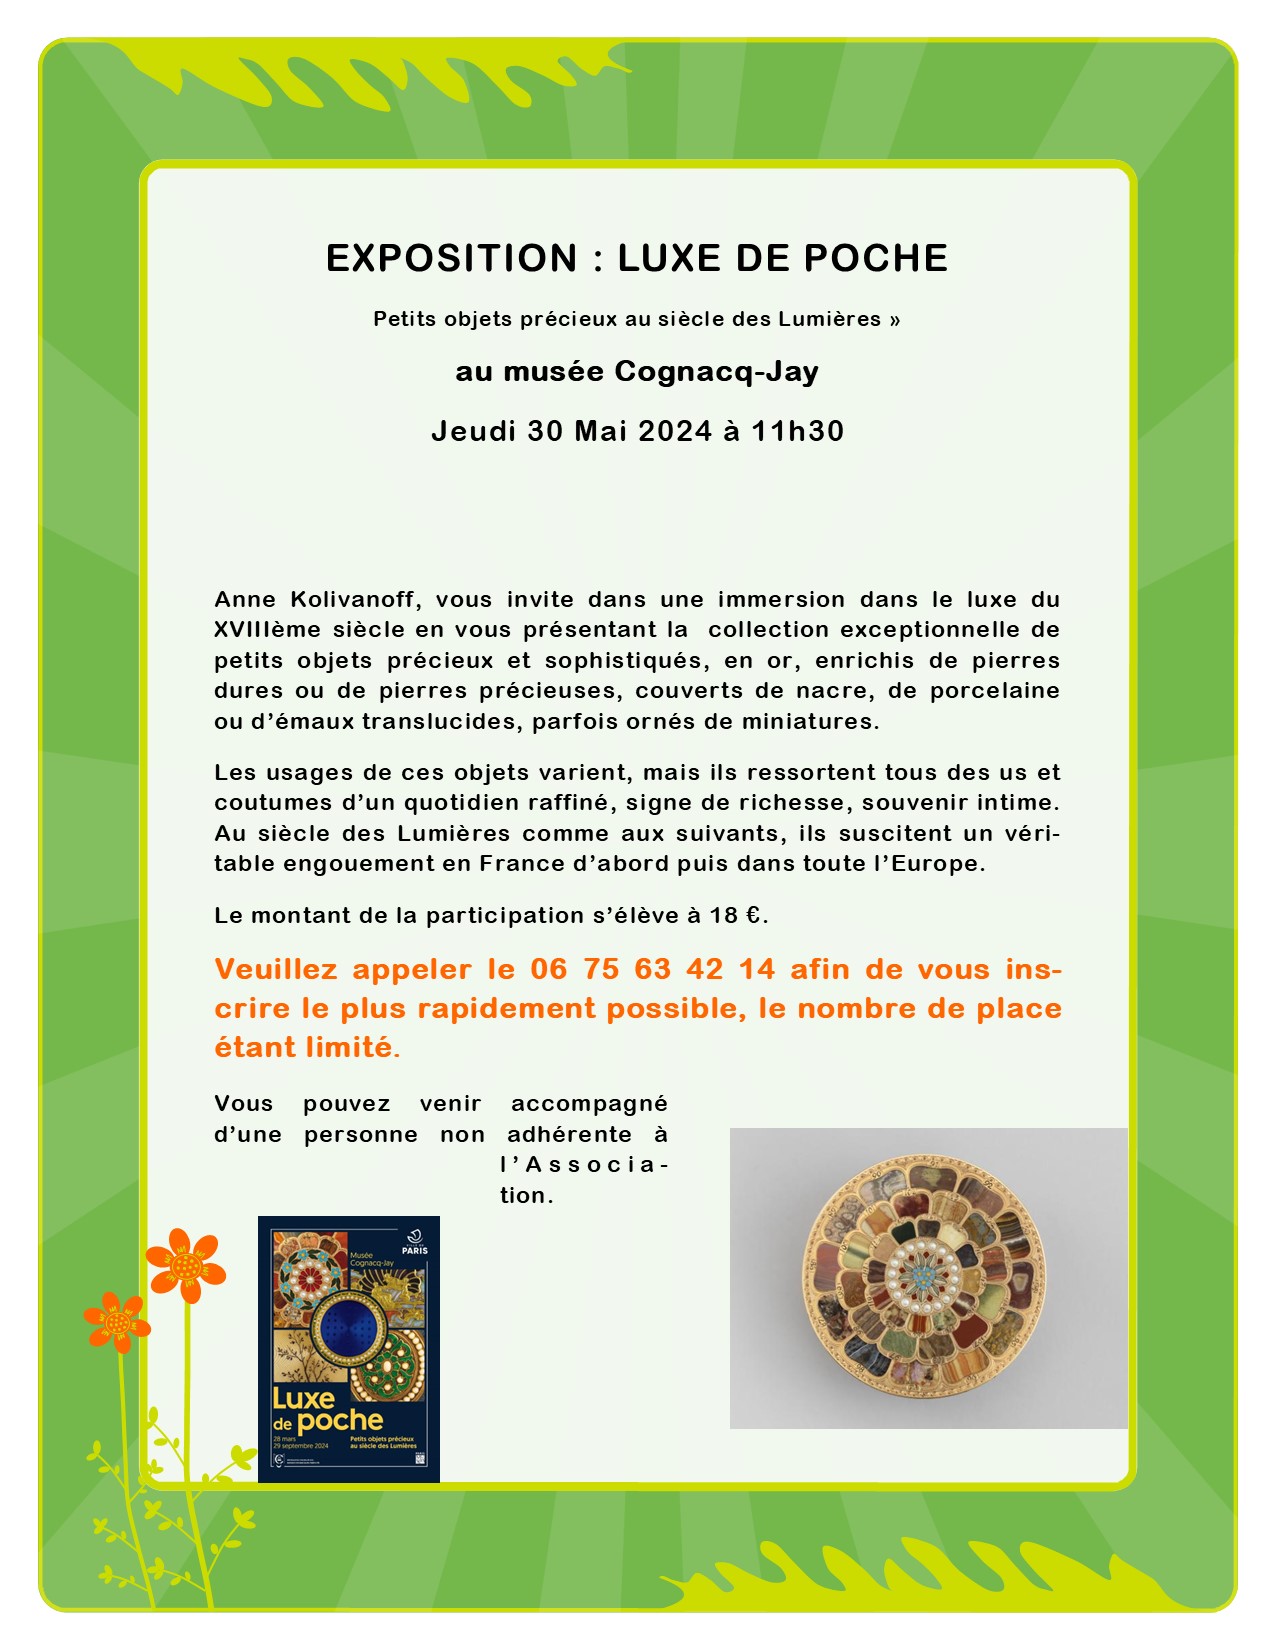 EXPOSITION : LUXE DE POCHE « Petits objets précieux au siècle des Lumières »